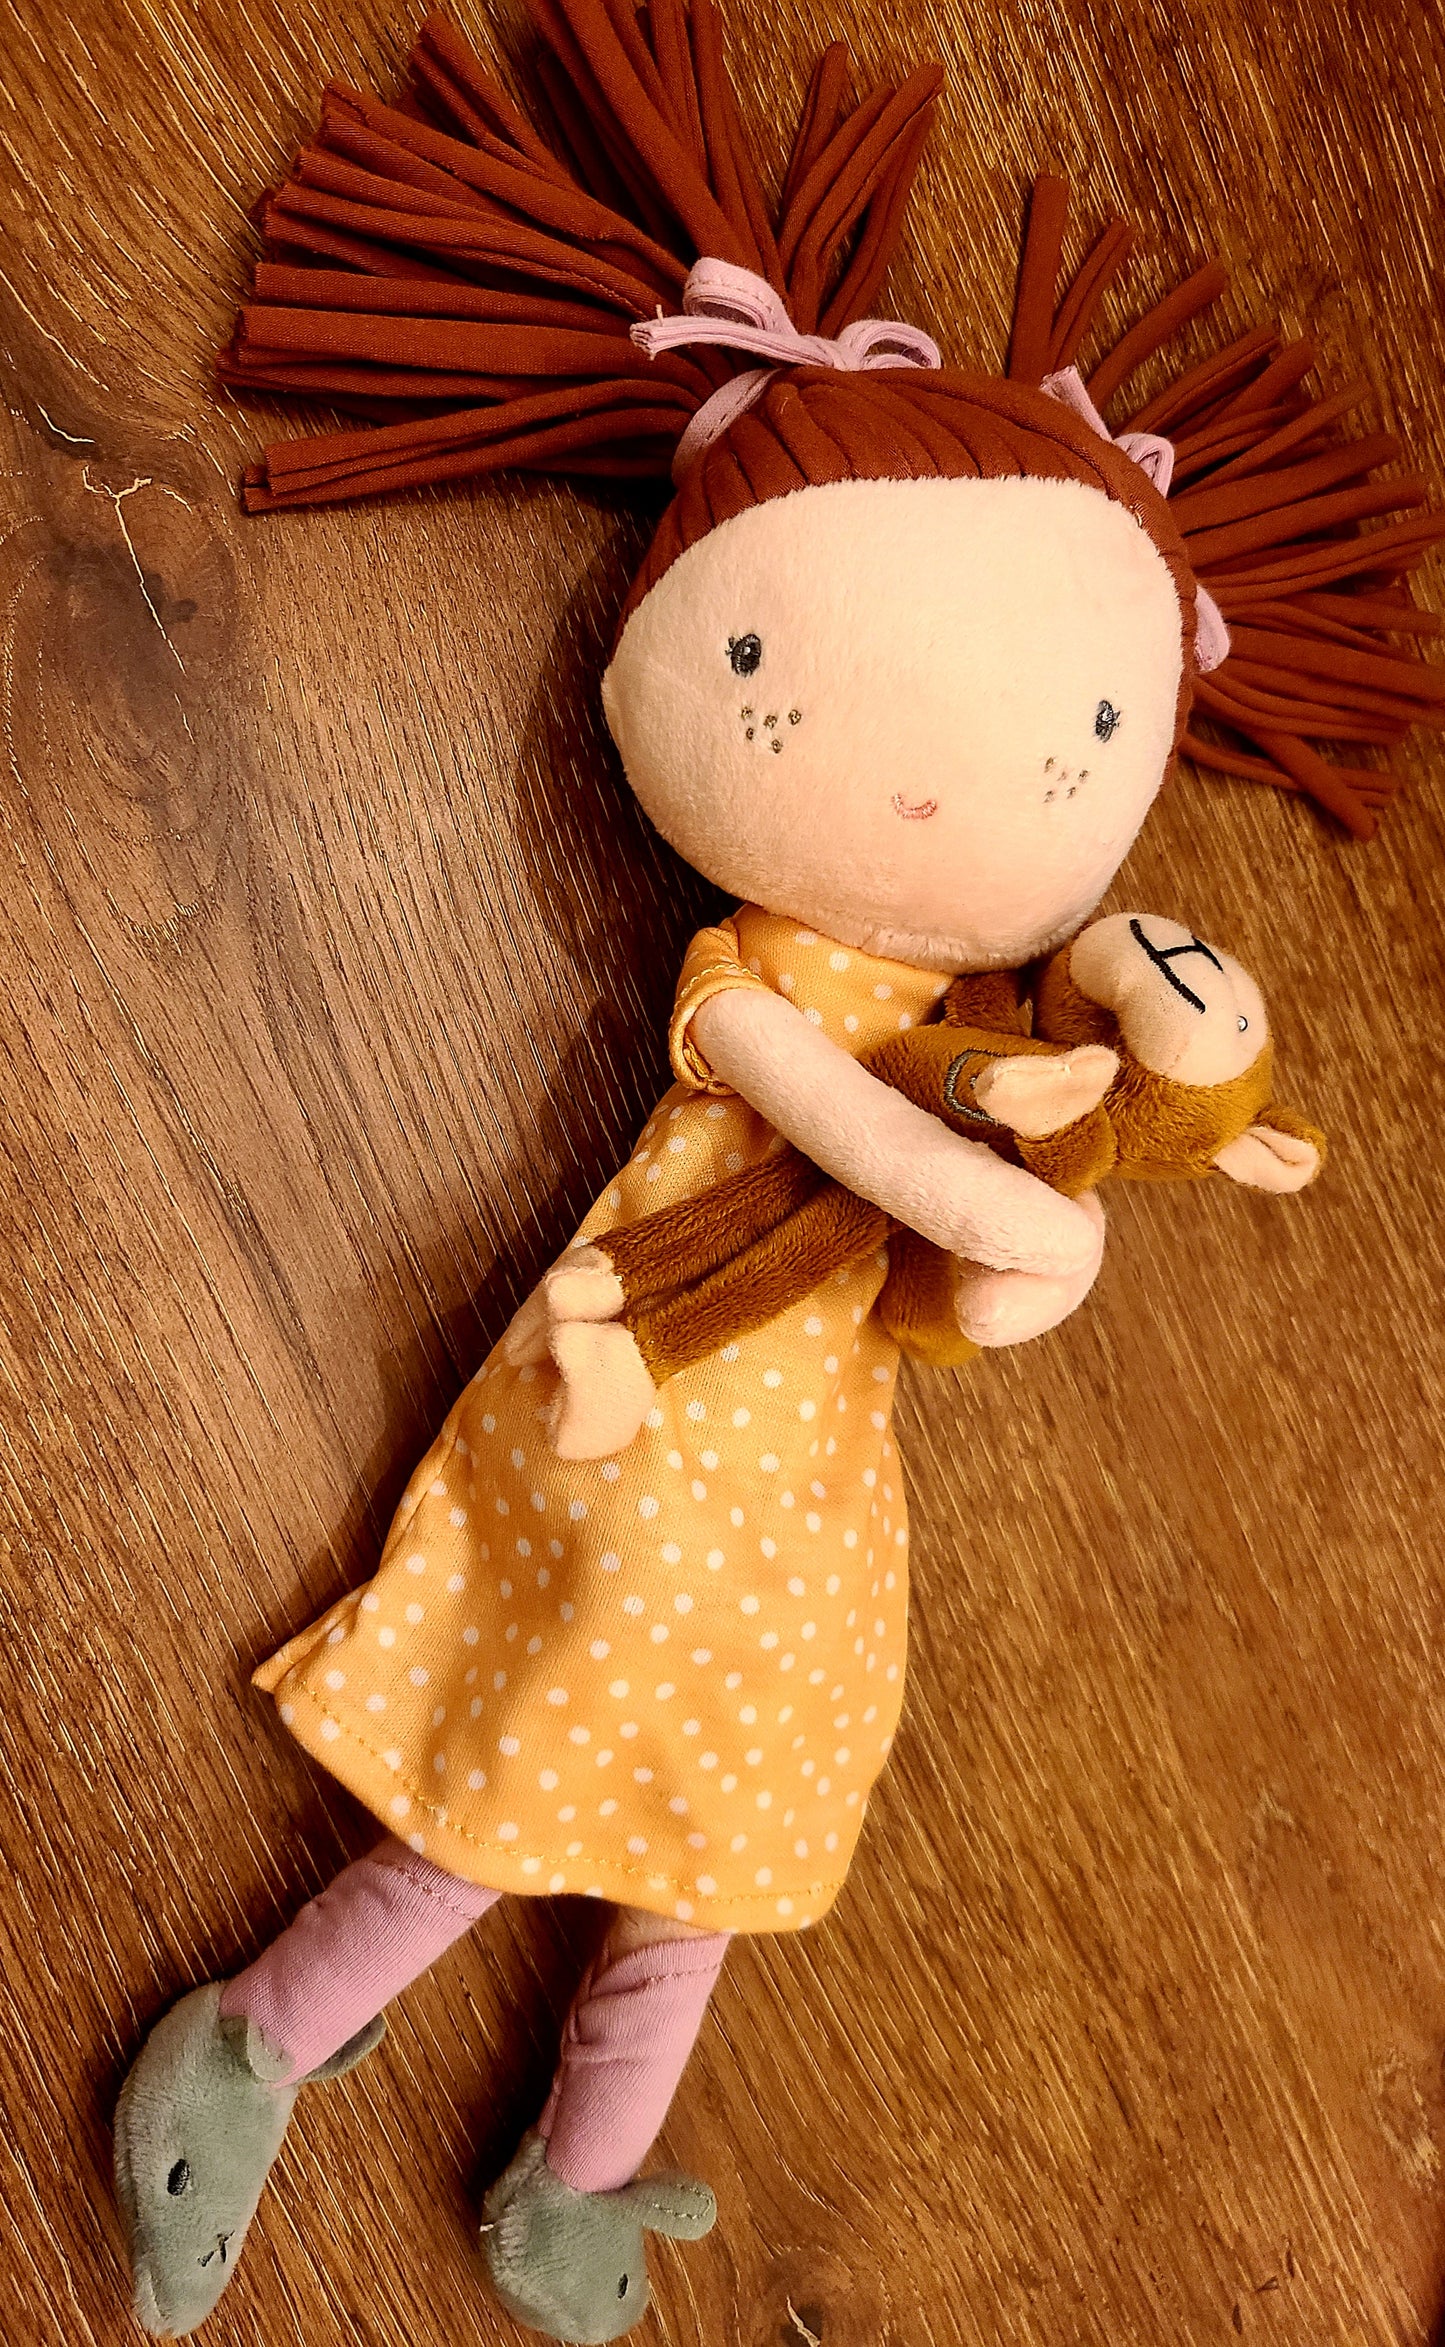 Soft Rag 13in Little Sophia+ Monkey Plush Doll Toy/ Baby Gift Toy